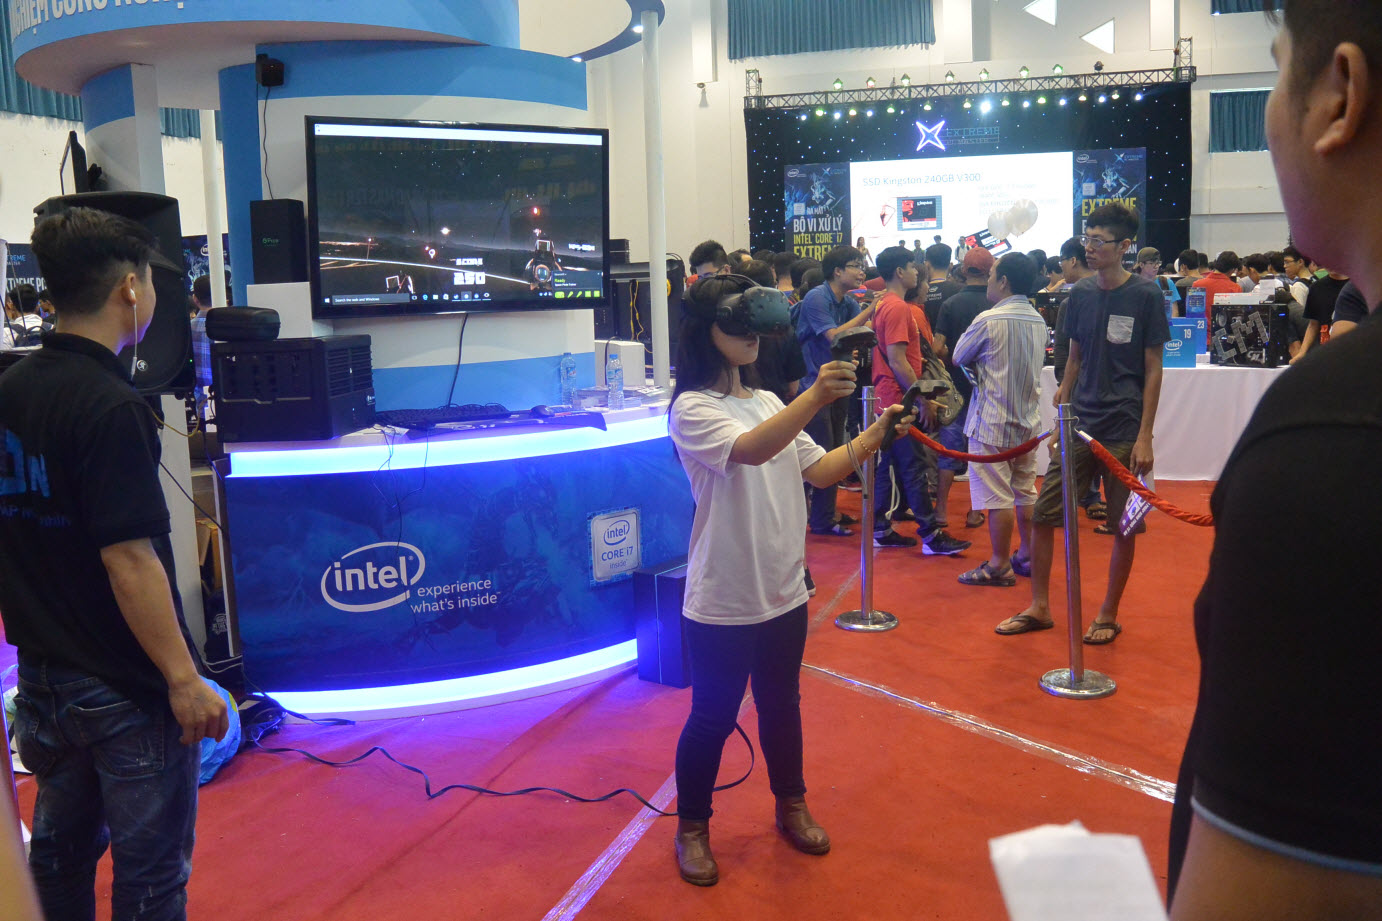 Lắp Đặt Hệ Thống Thực Tế Ảo 9D cho Kinh Doanh - Oculus - HTC - Gear VR - Playstation VR - 8